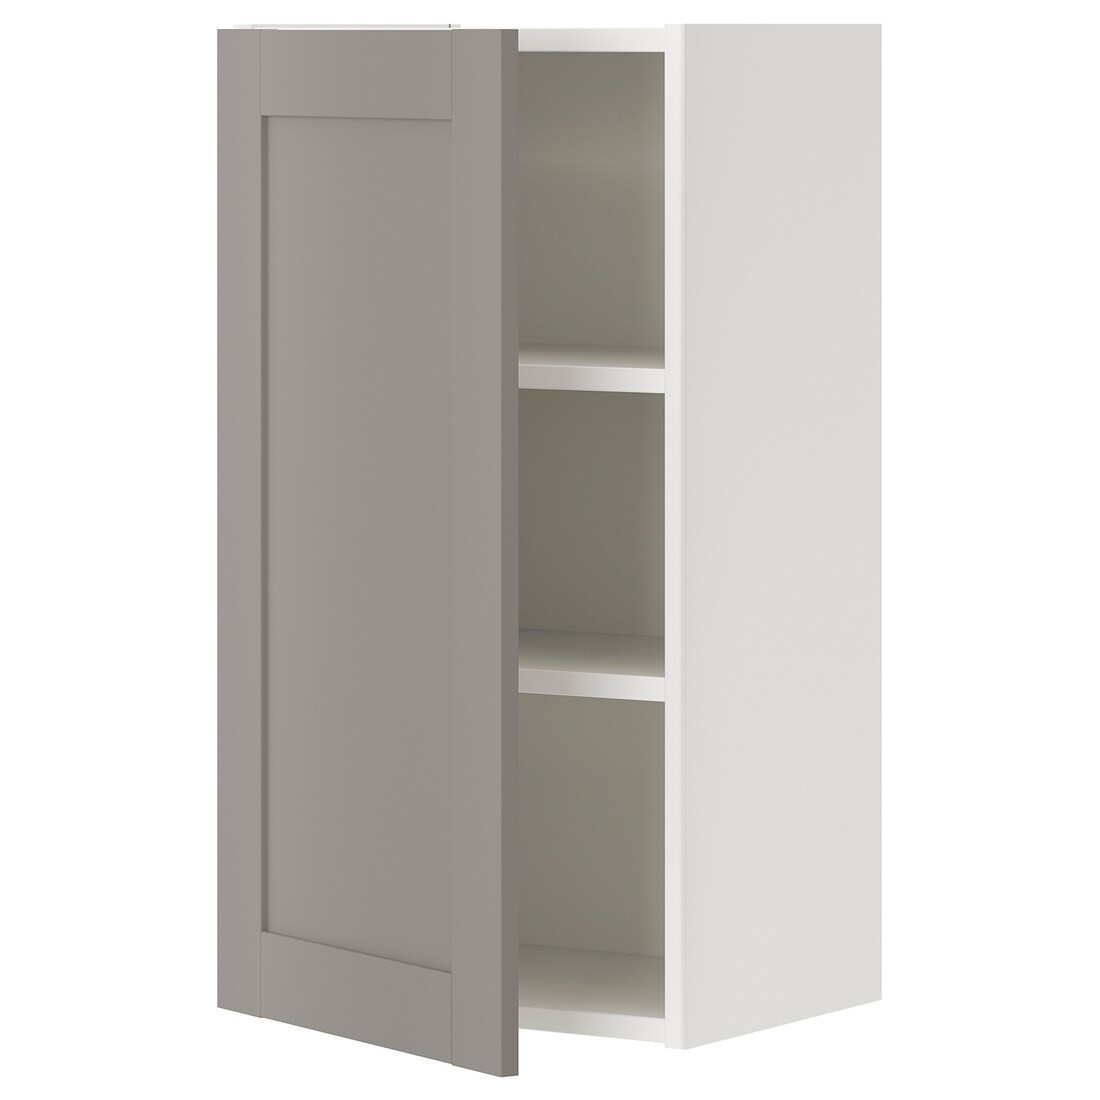 IKEA ENHET ЭНХЕТ Навесной шкаф с 2 полками / дверцами, белый / серая рамка, 40x32x75 см 99320998 993.209.98